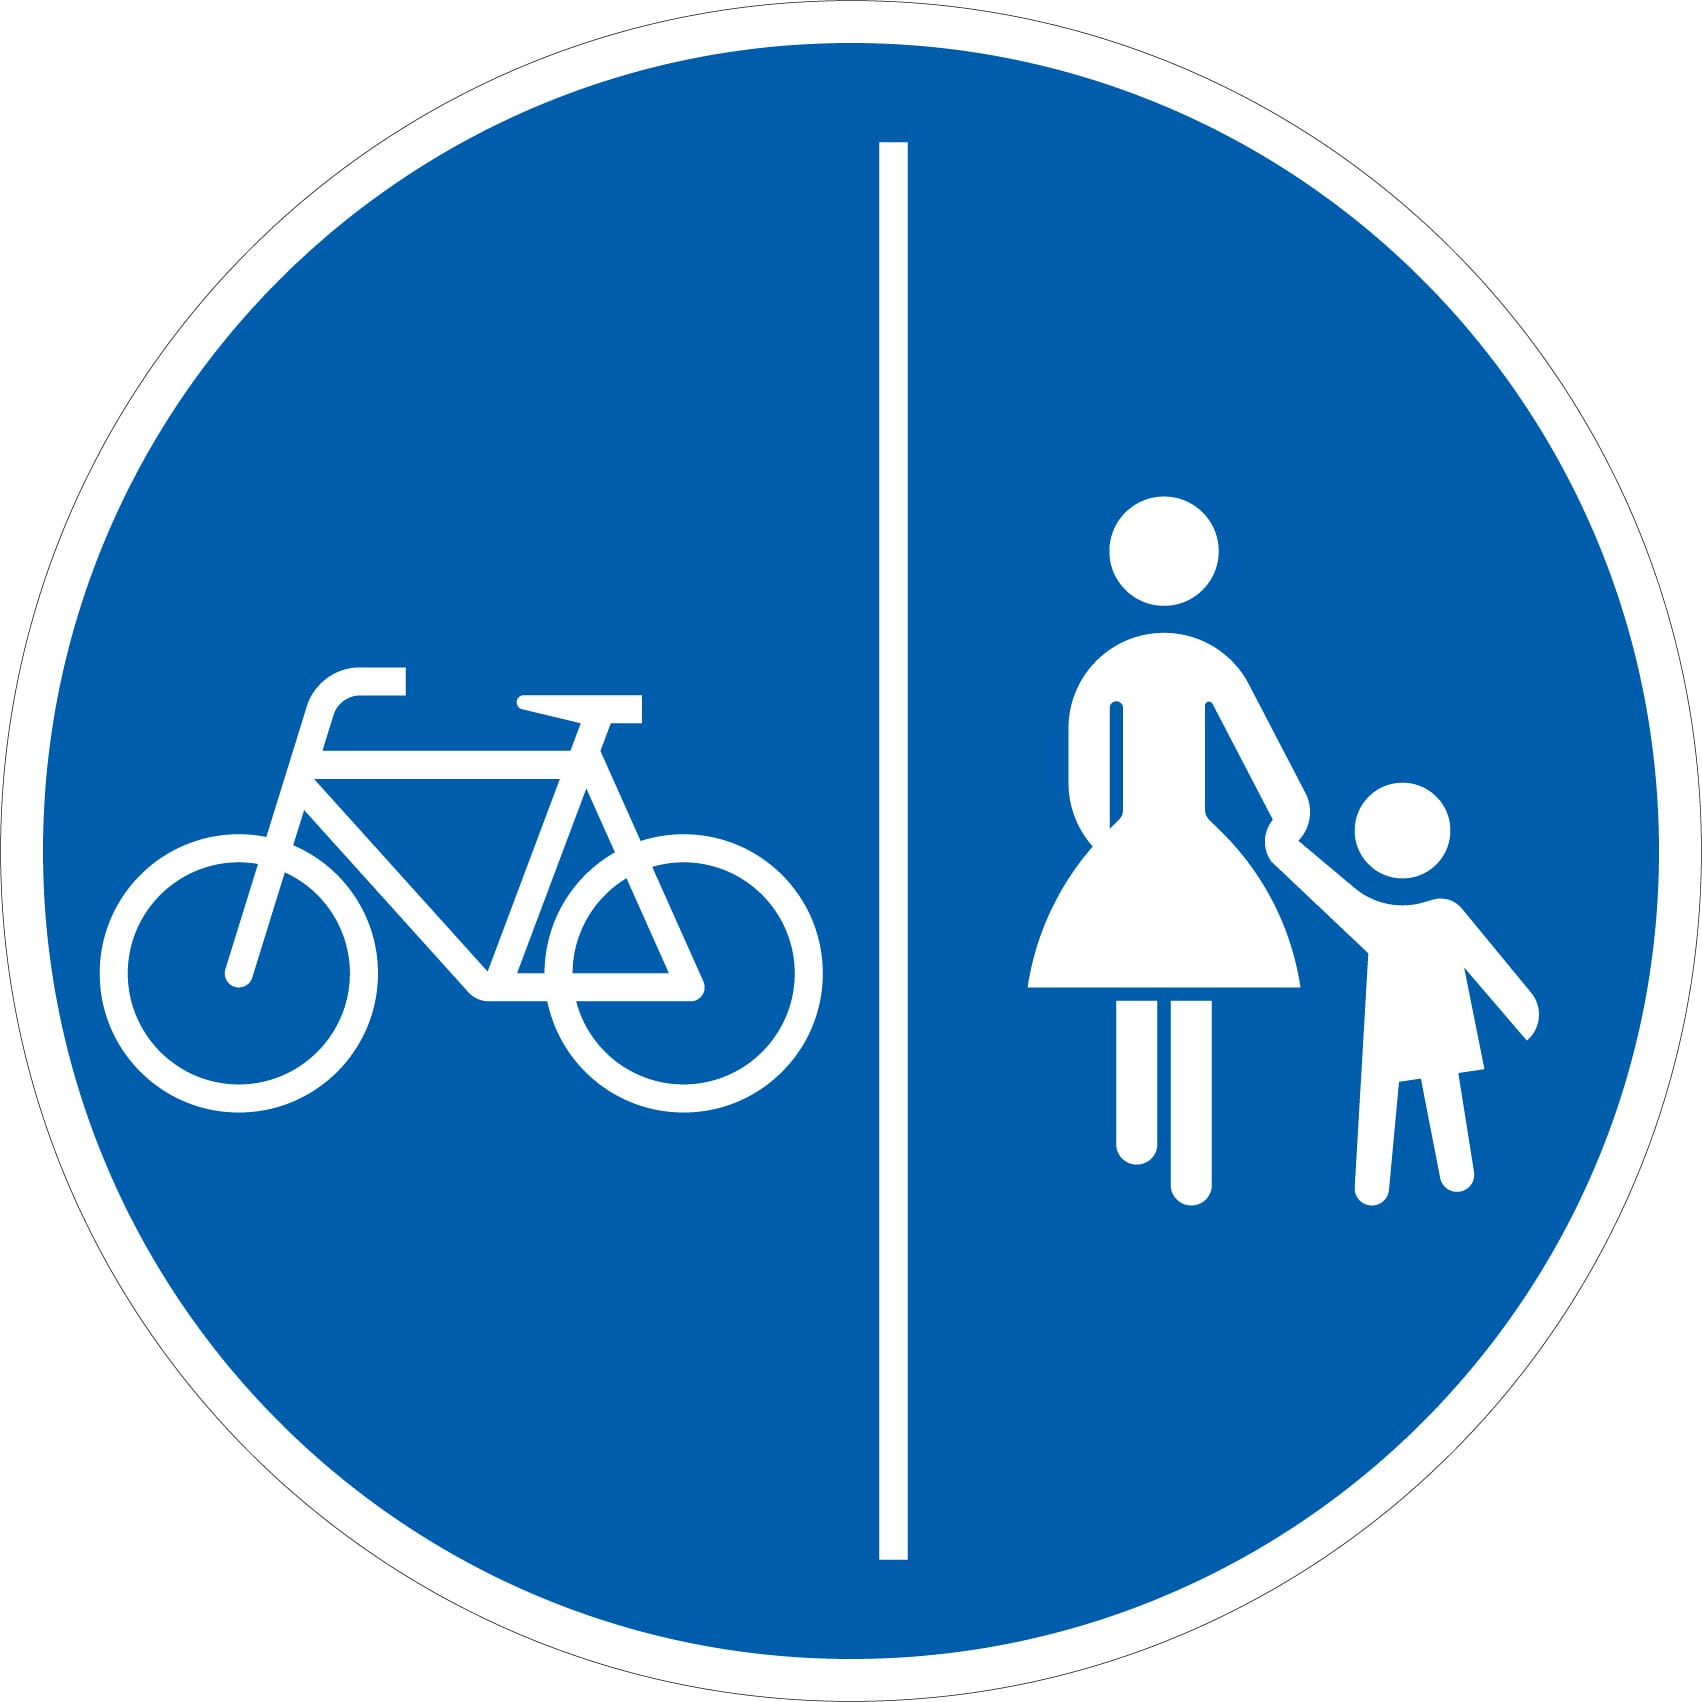 Trennt eine weiße Linie senkrecht das Radwegschild, dann müssen Radfahrer die eine Seite und Fußgänger die andere Seite des Weges benutzen.